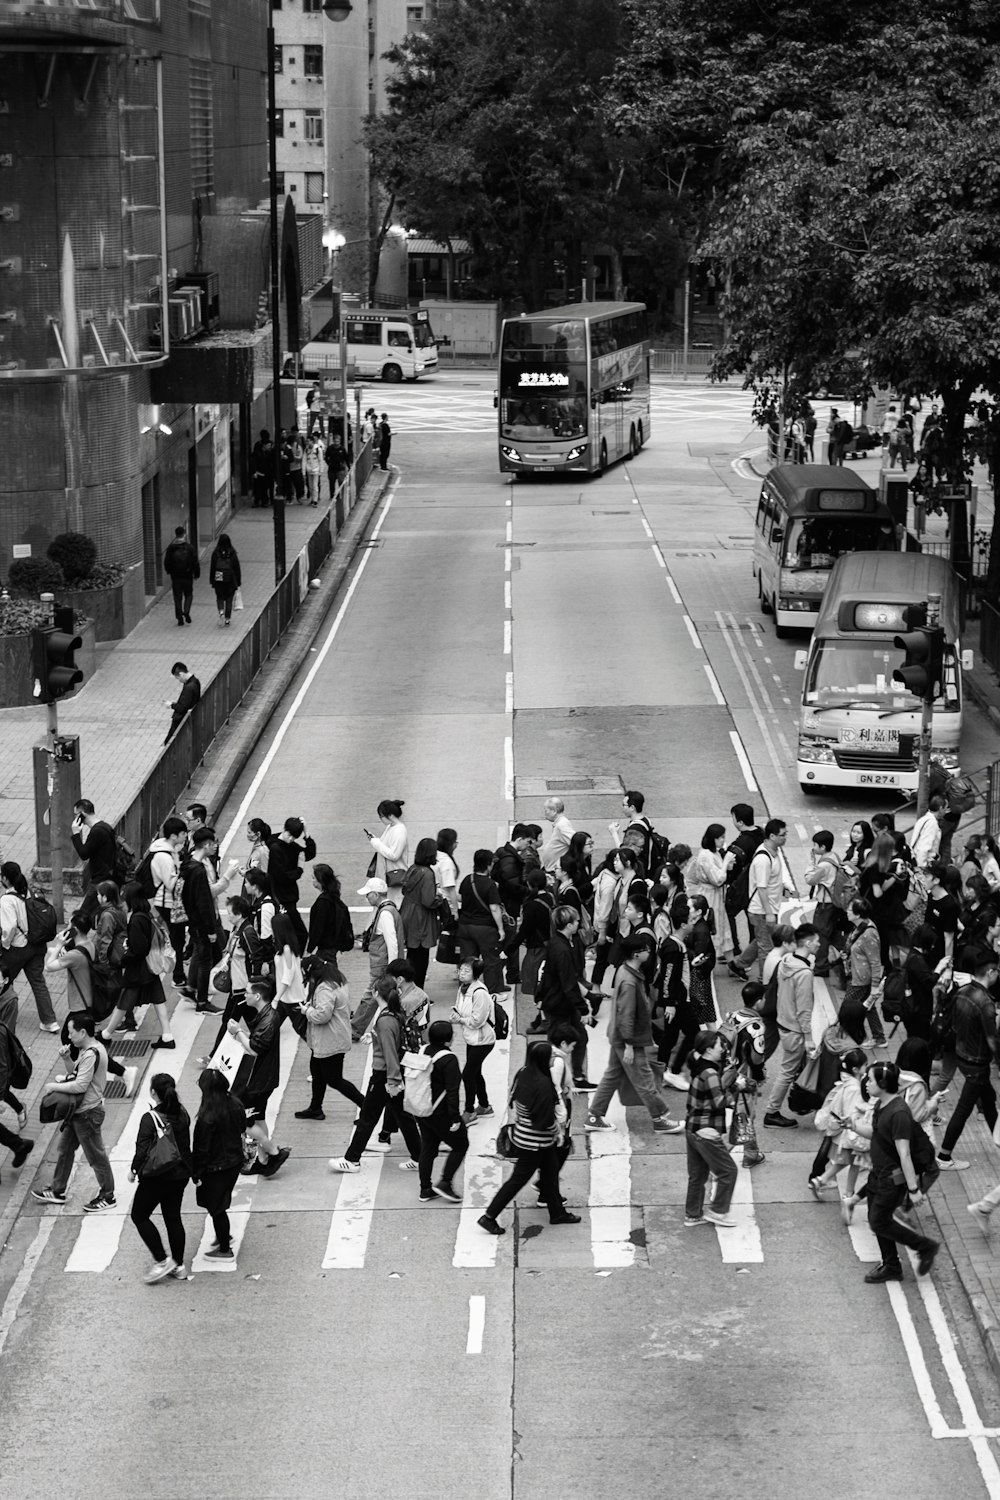 photographie en niveaux de gris de personnes traversant la route